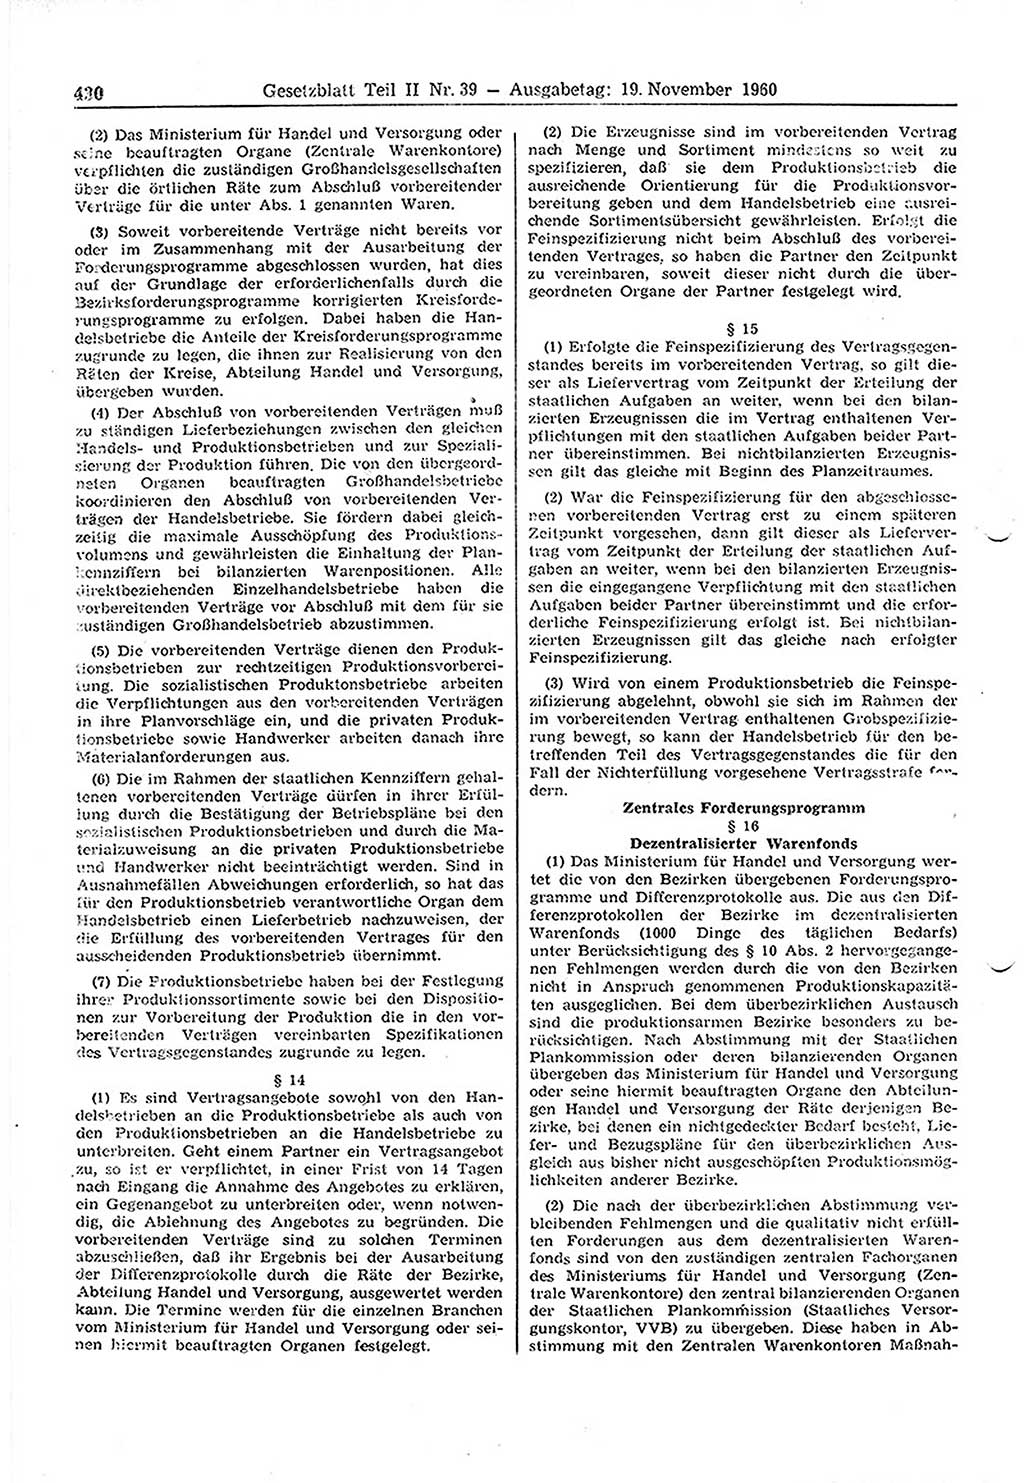 Gesetzblatt (GBl.) der Deutschen Demokratischen Republik (DDR) Teil ⅠⅠ 1960, Seite 430 (GBl. DDR ⅠⅠ 1960, S. 430)